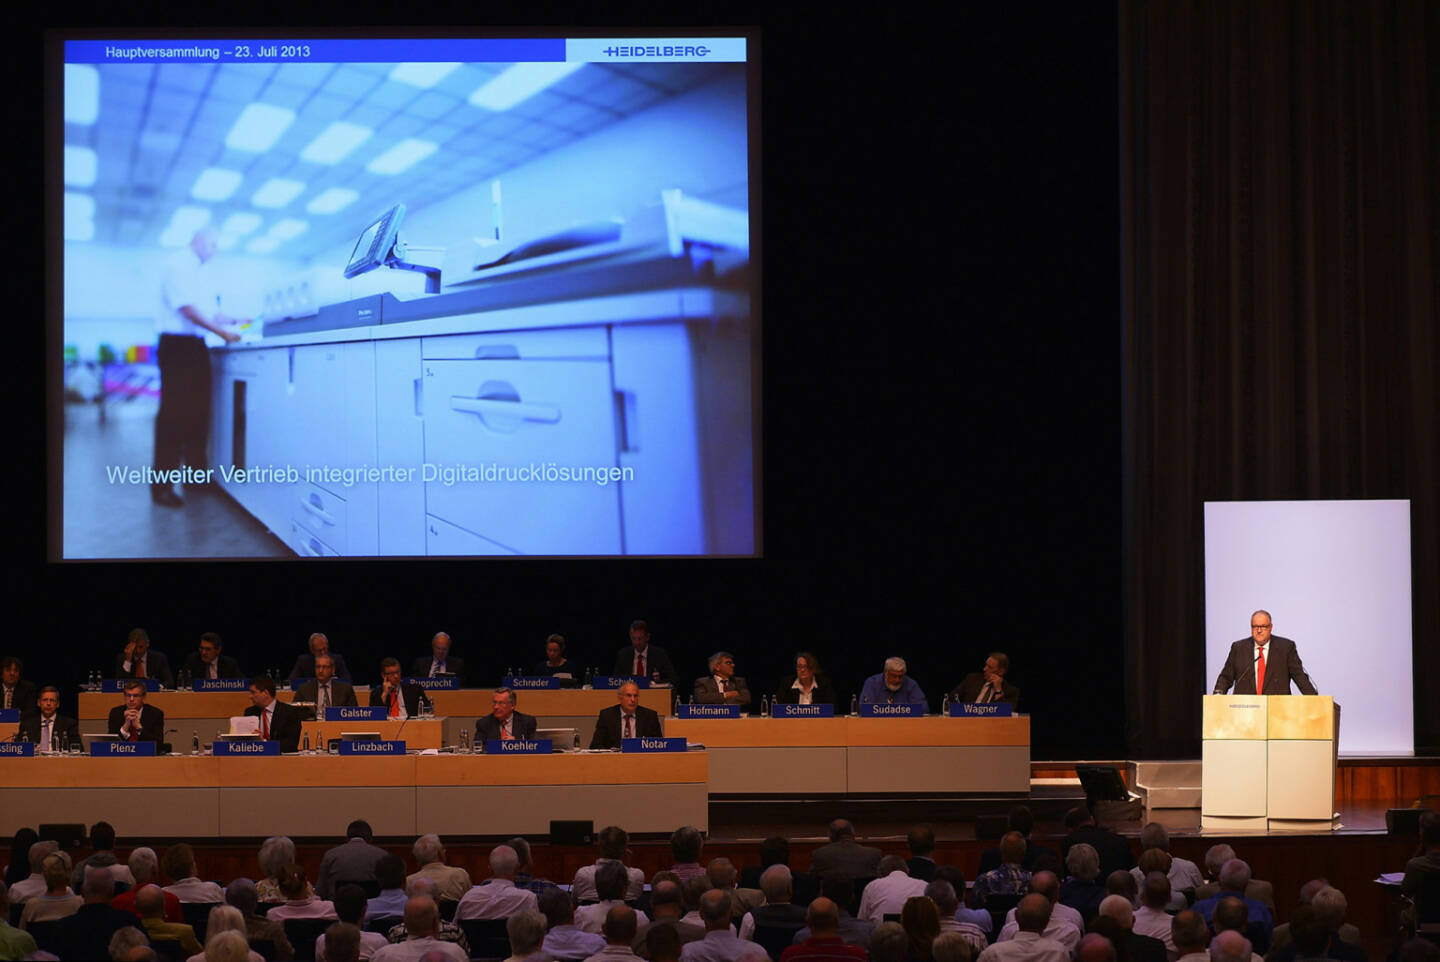 Hauptversammlung der Heidelberger Druckmaschinen AG zum Geschäftsjahr 2012/2013